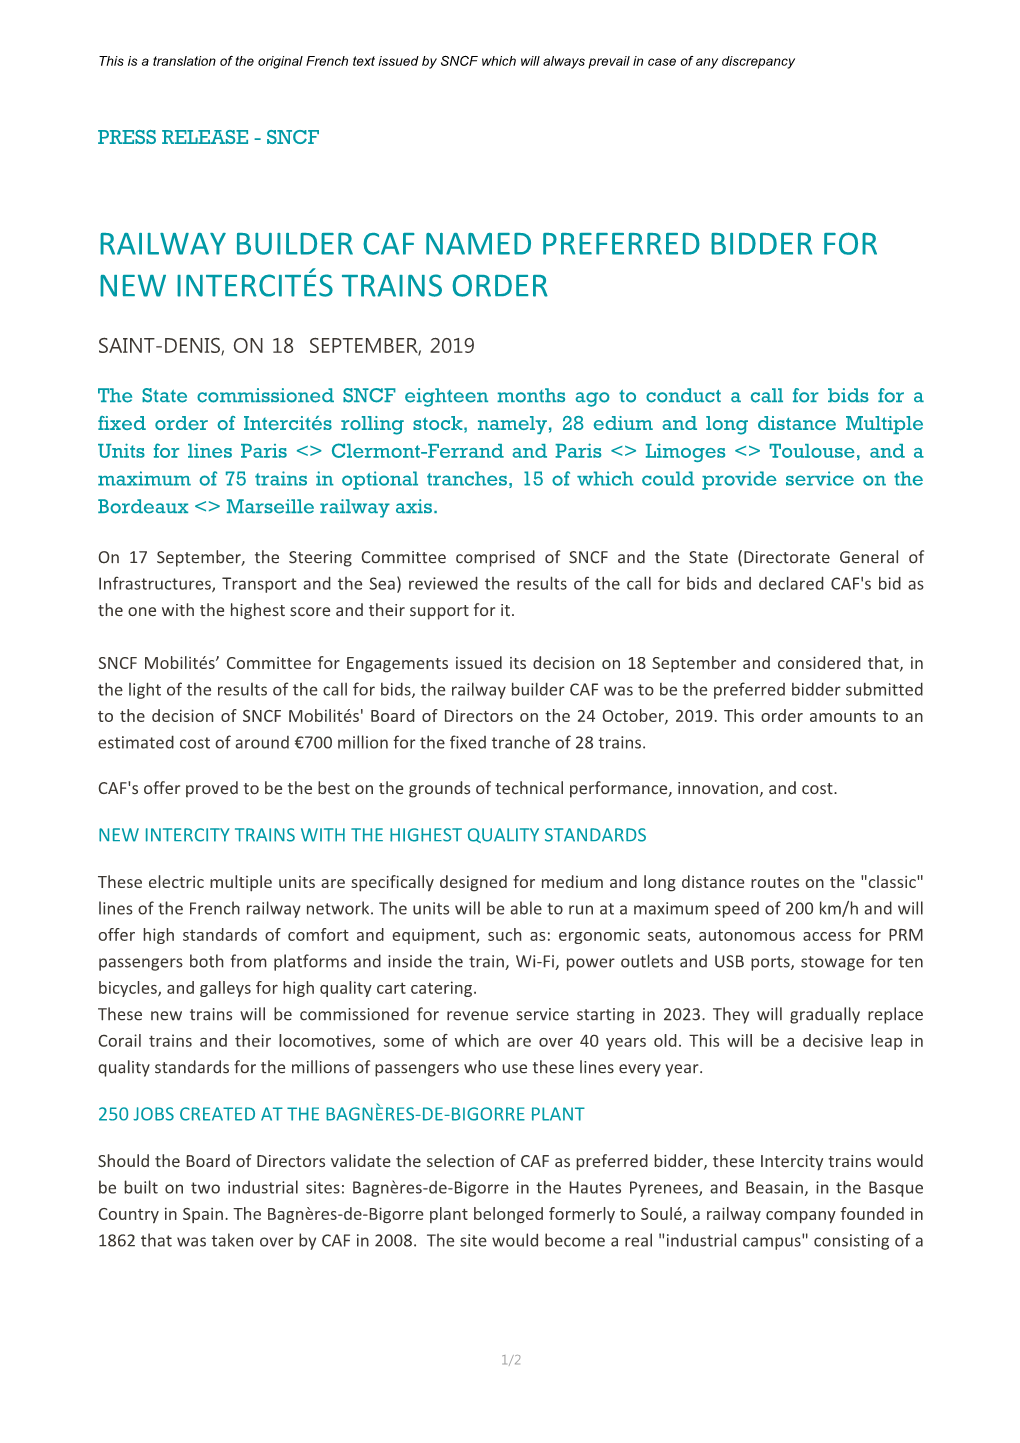 Railway Builder Caf Named Preferred Bidder for New Intercités Trains Order